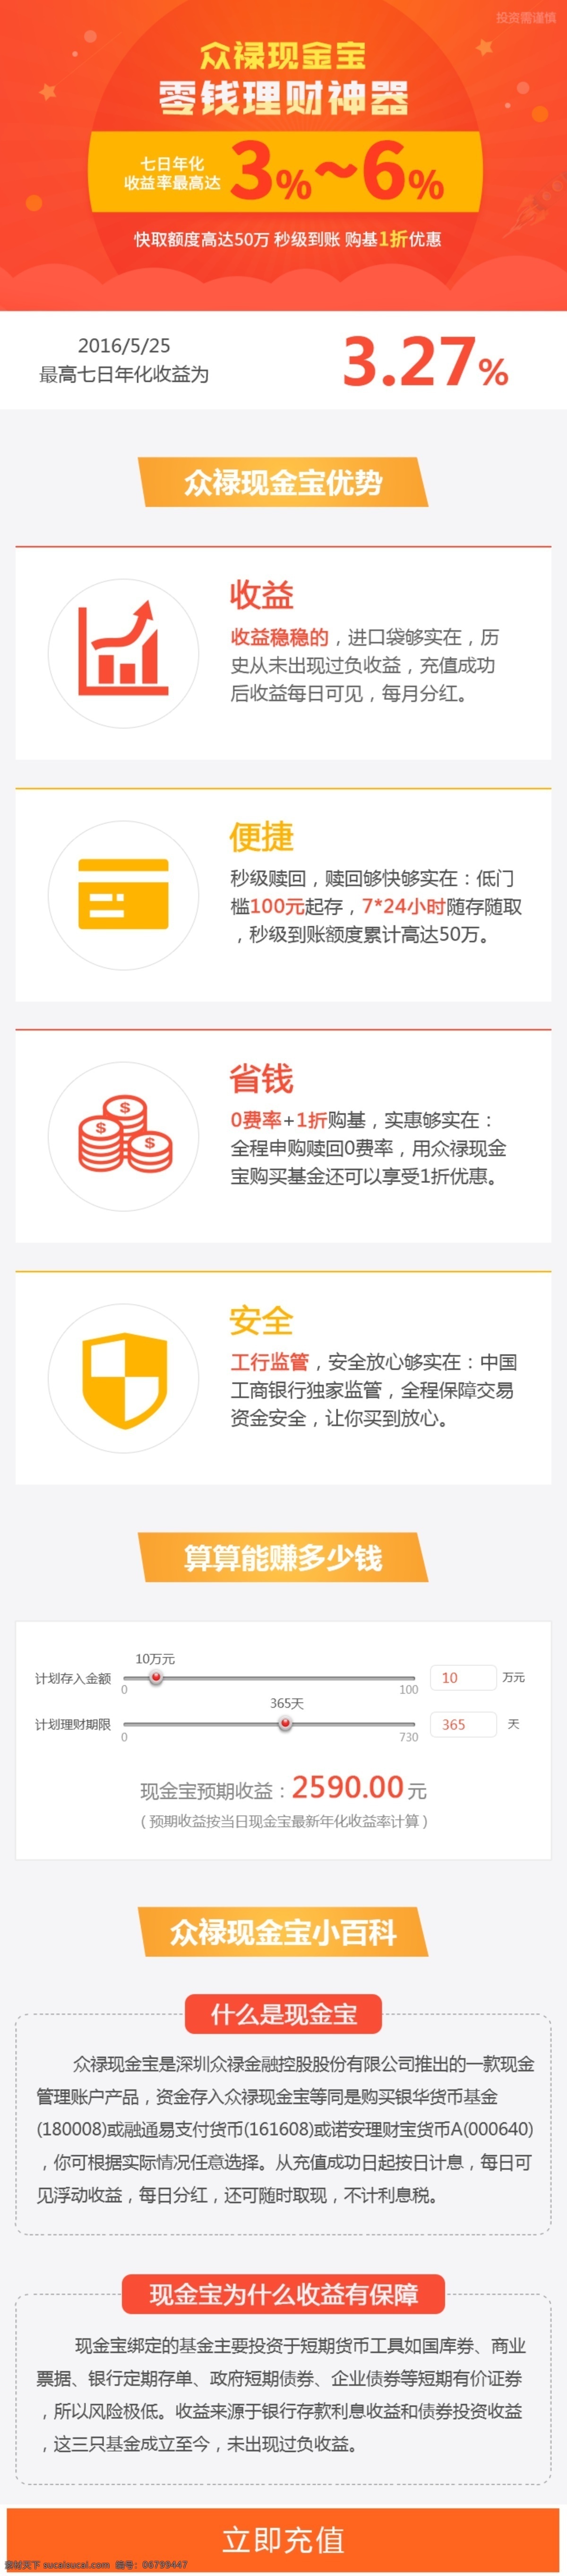 现金宝 货币基金 金融 金融专题 现金宝专题 活动专题 web 界面设计 中文模板